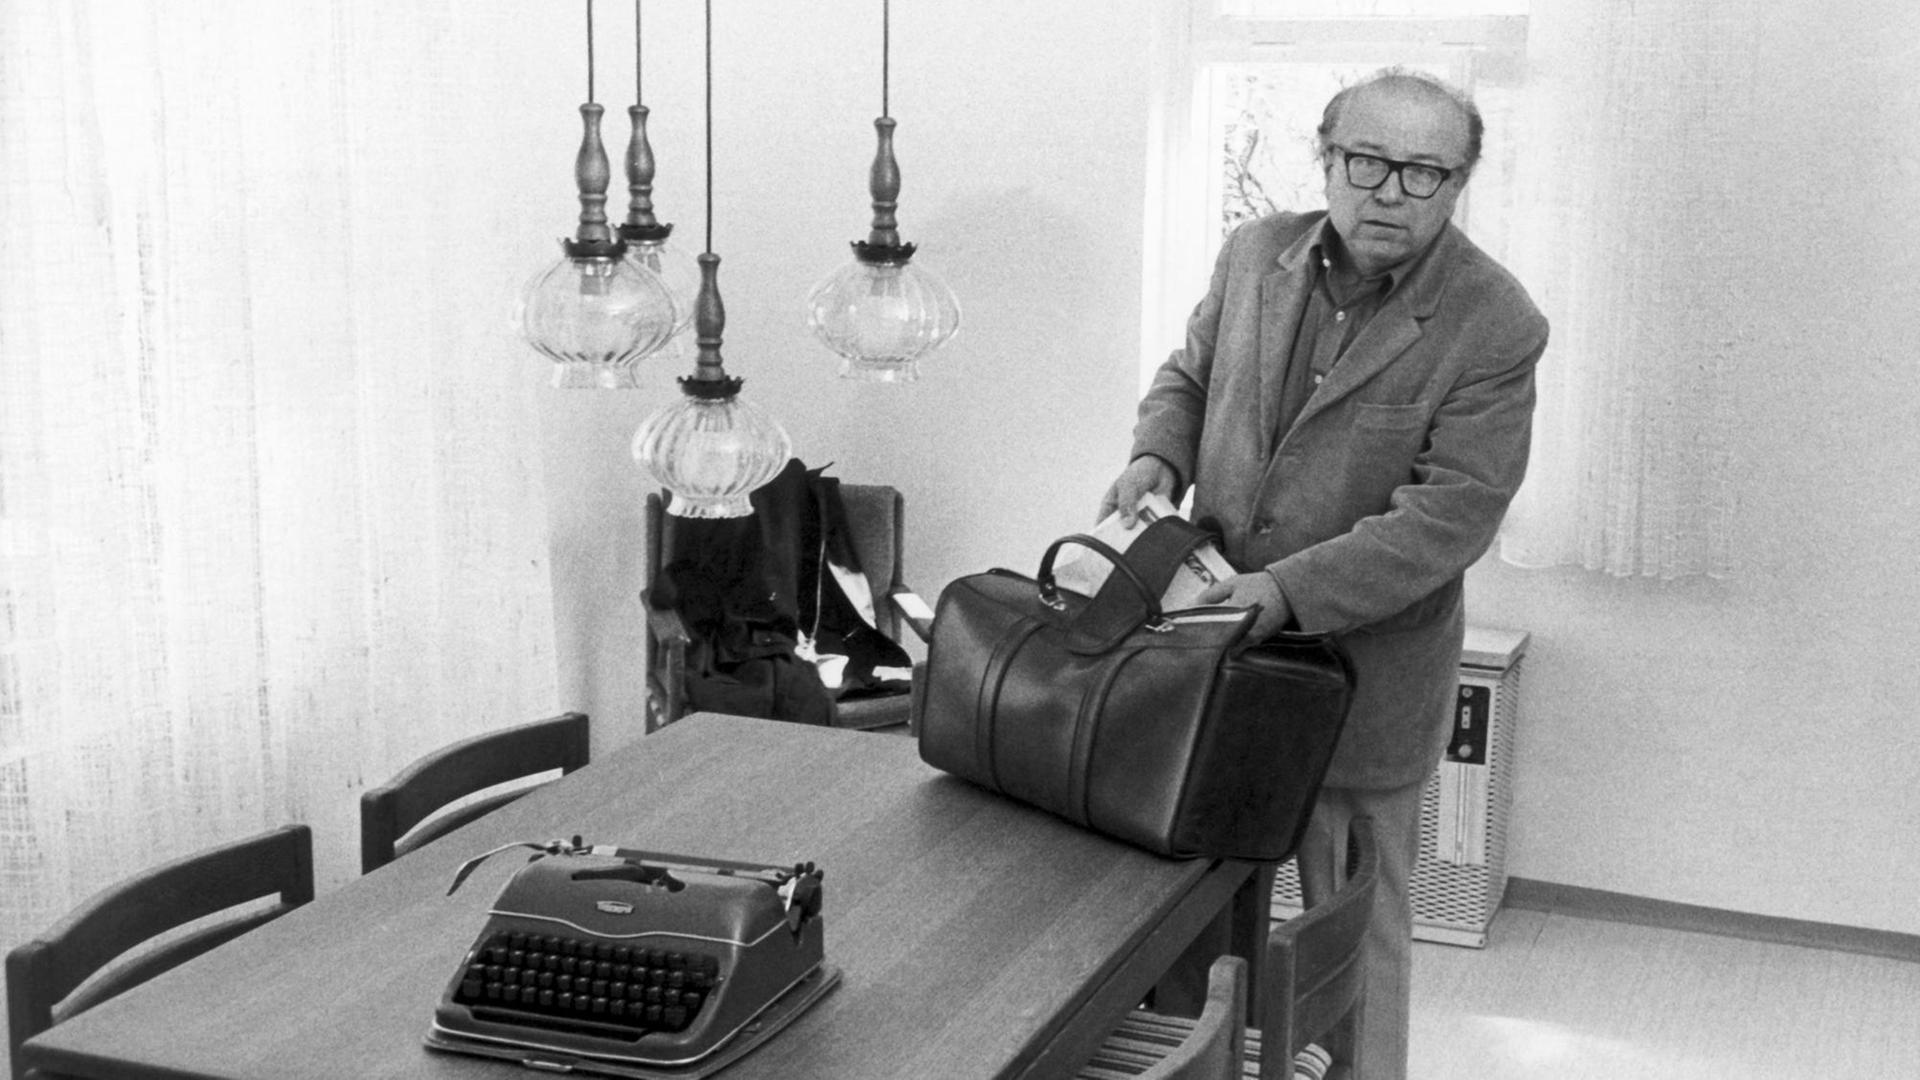 Der Münchner Schriftsteller Wolfgang Koeppen packt am 28.04.1975 in seinem kostenlosen Domizil in Bergen-Enkheim eine Tasche aus.